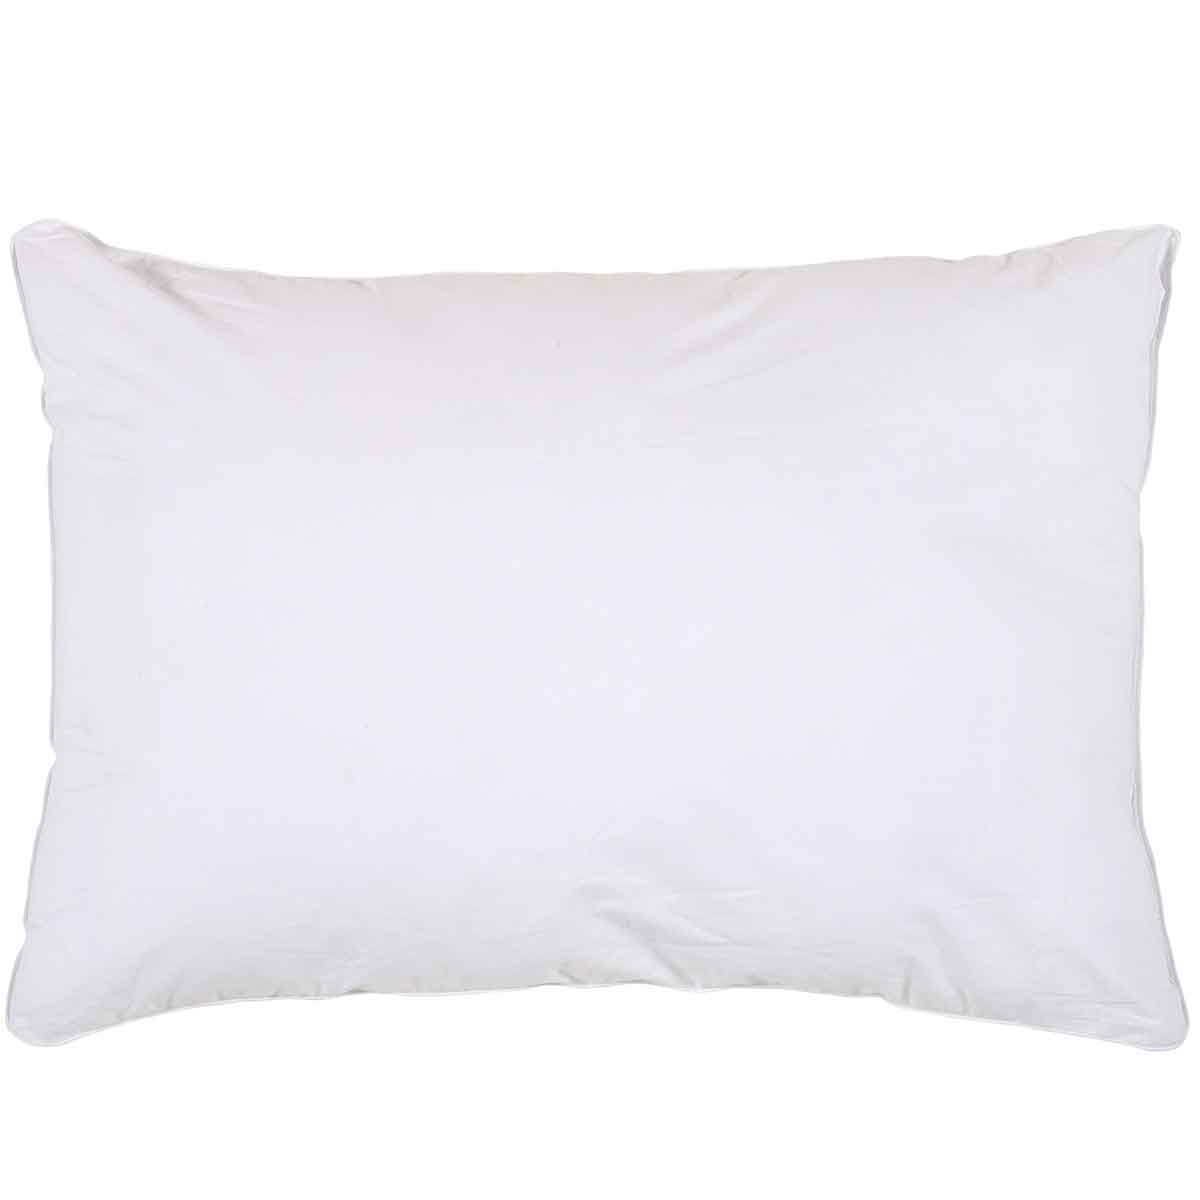 Μαξιλάρι Ύπνου Μαλακό (50×70) Das Home Happy Pillow 1025 Microfiber 184689